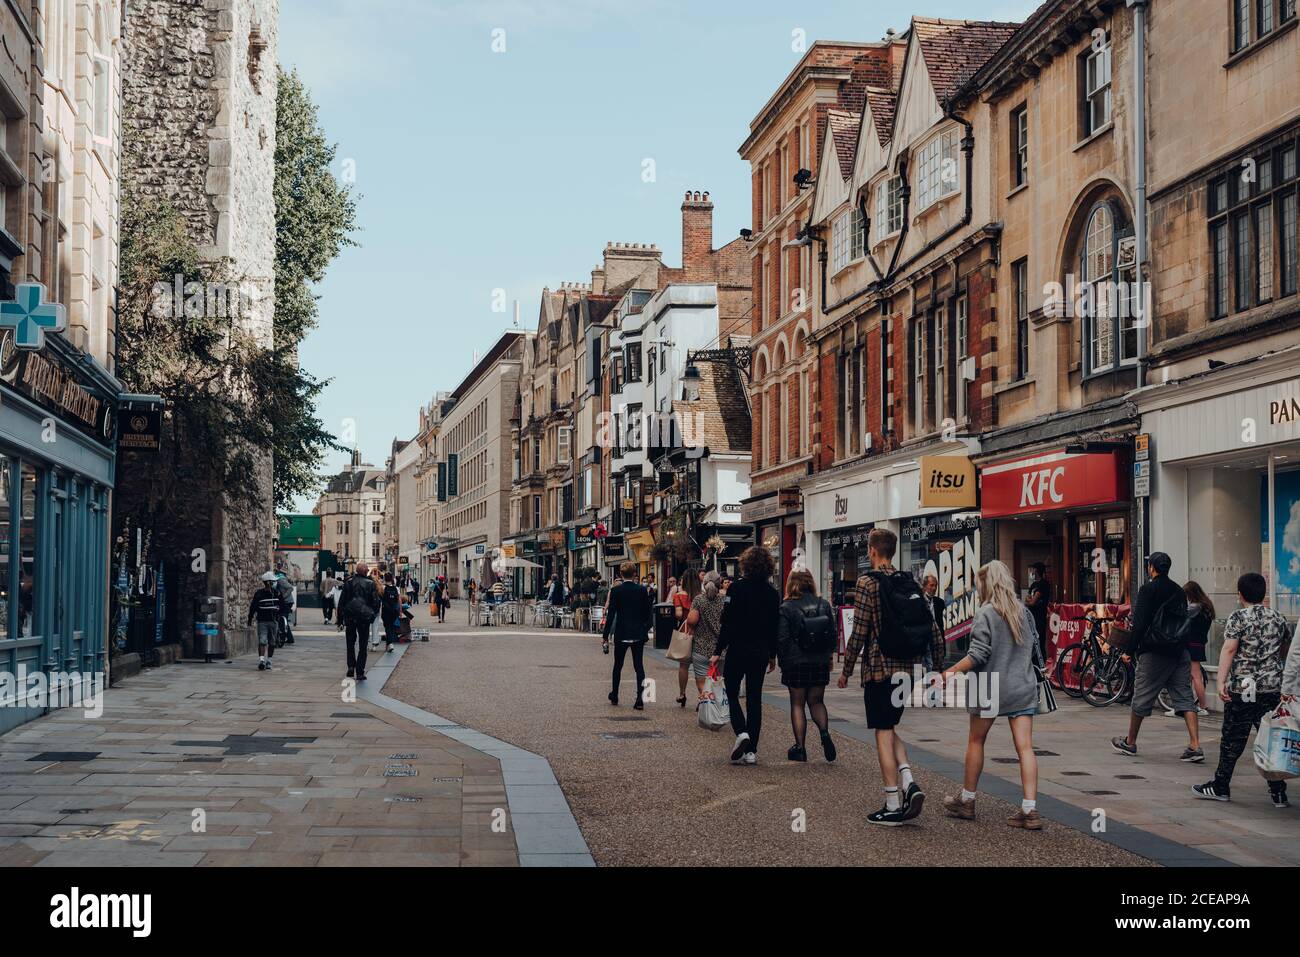 Oxford, Royaume-Uni - 04 août 2020 : les gens qui marchent devant les boutiques dans une rue élevée d'Oxford, une ville d'Angleterre célèbre pour sa prestigieuse université, estab Banque D'Images